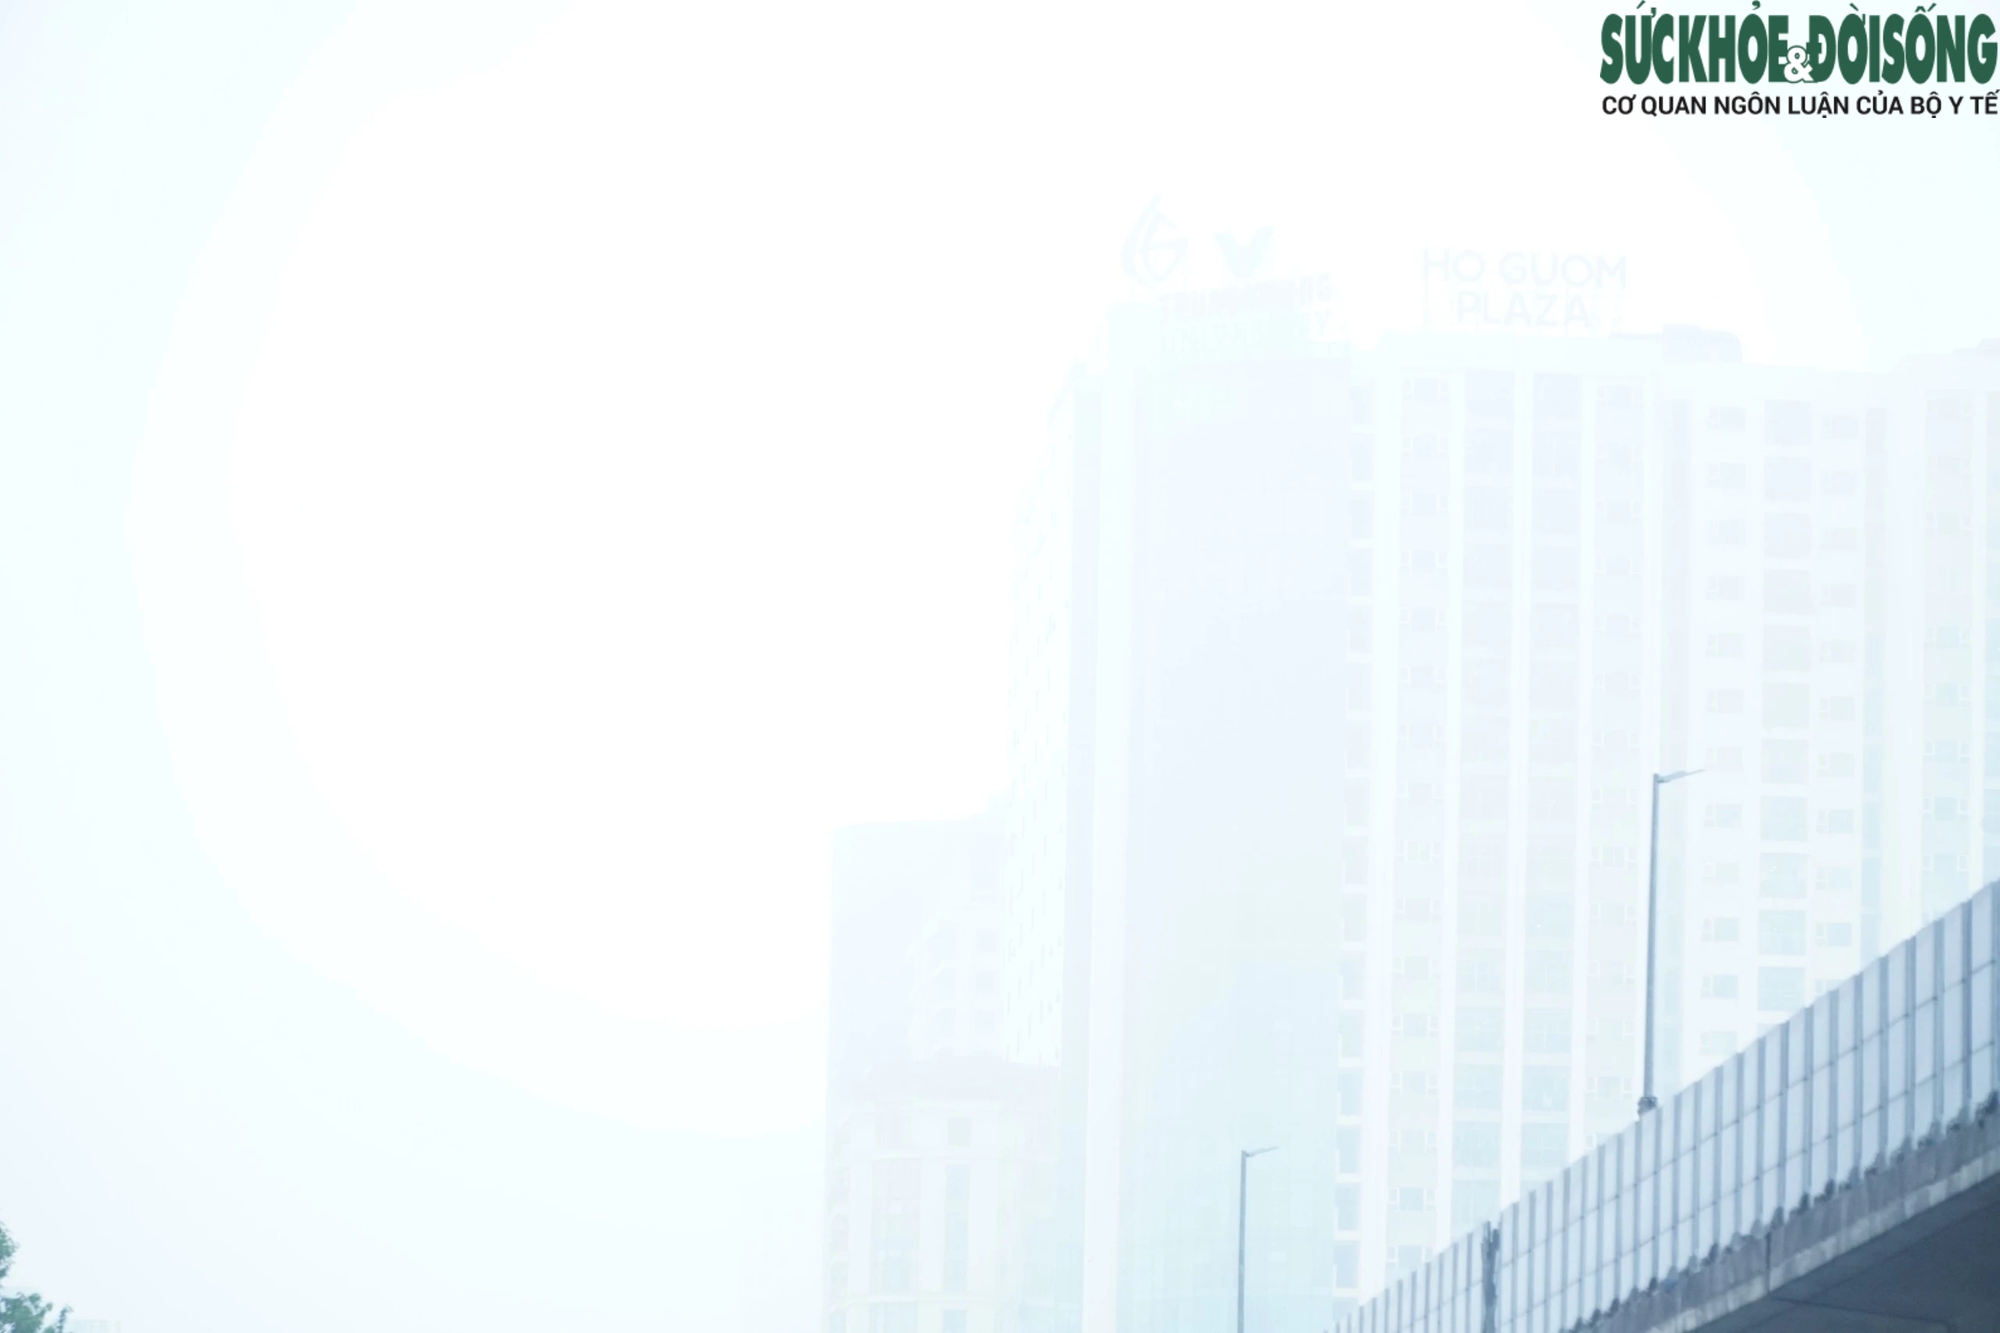 Mưa lạnh, sương mù 'nuốt chửng' loạt tòa chung cư cao tầng ở Hà Nội- Ảnh 3.